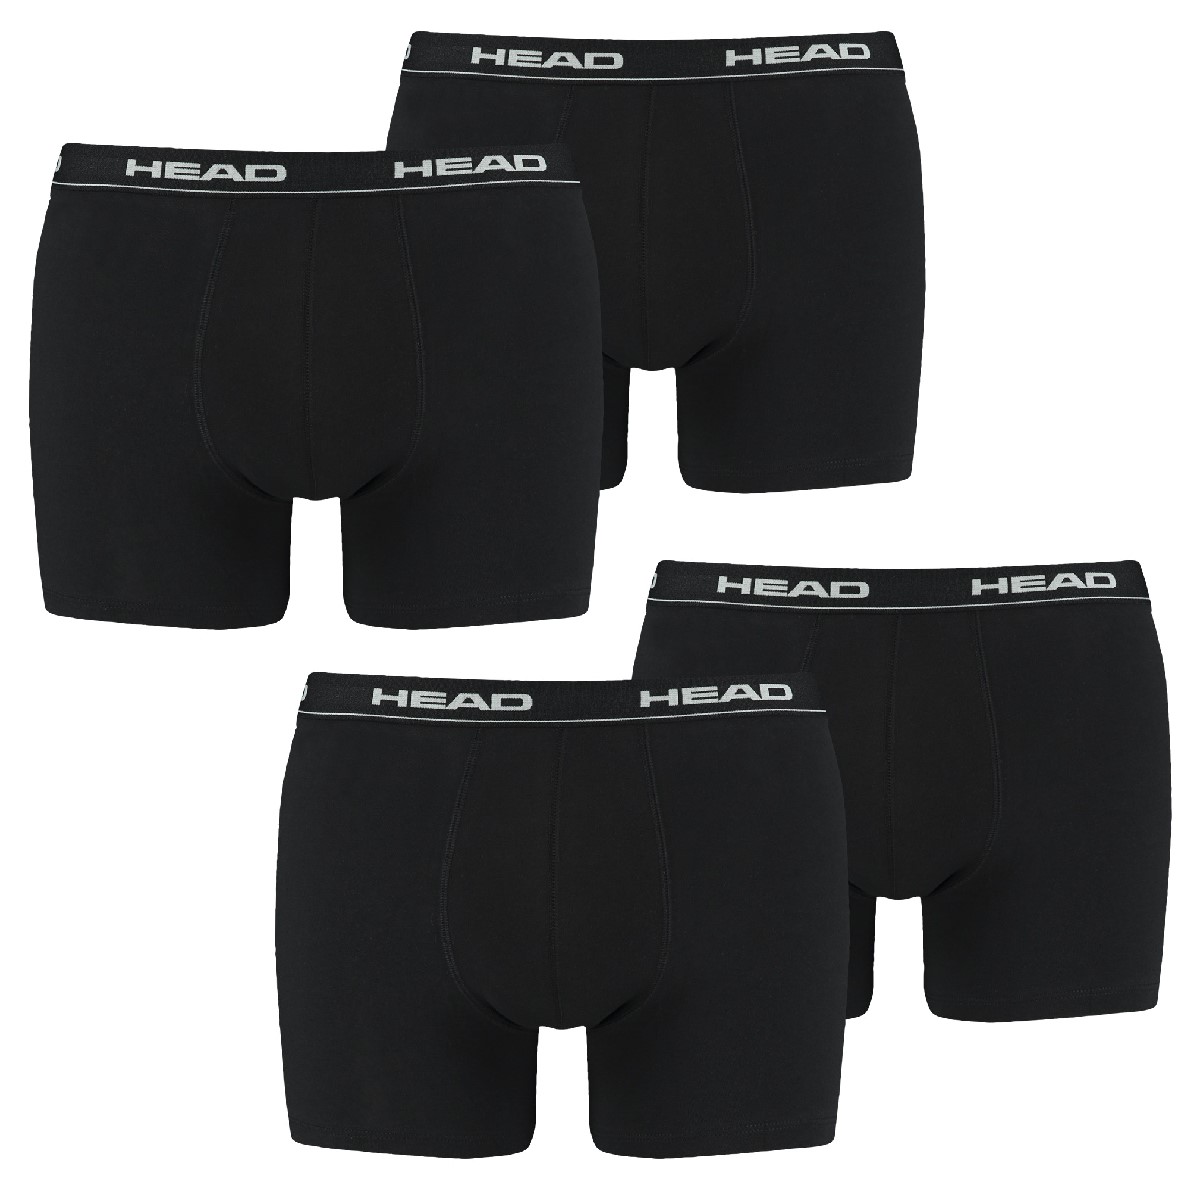 HEAD 6 er Pack Herren Boxer Boxershorts Basic Pant Unterwäsche, Bekleidungsgröße:M, Farbe:200 - Black